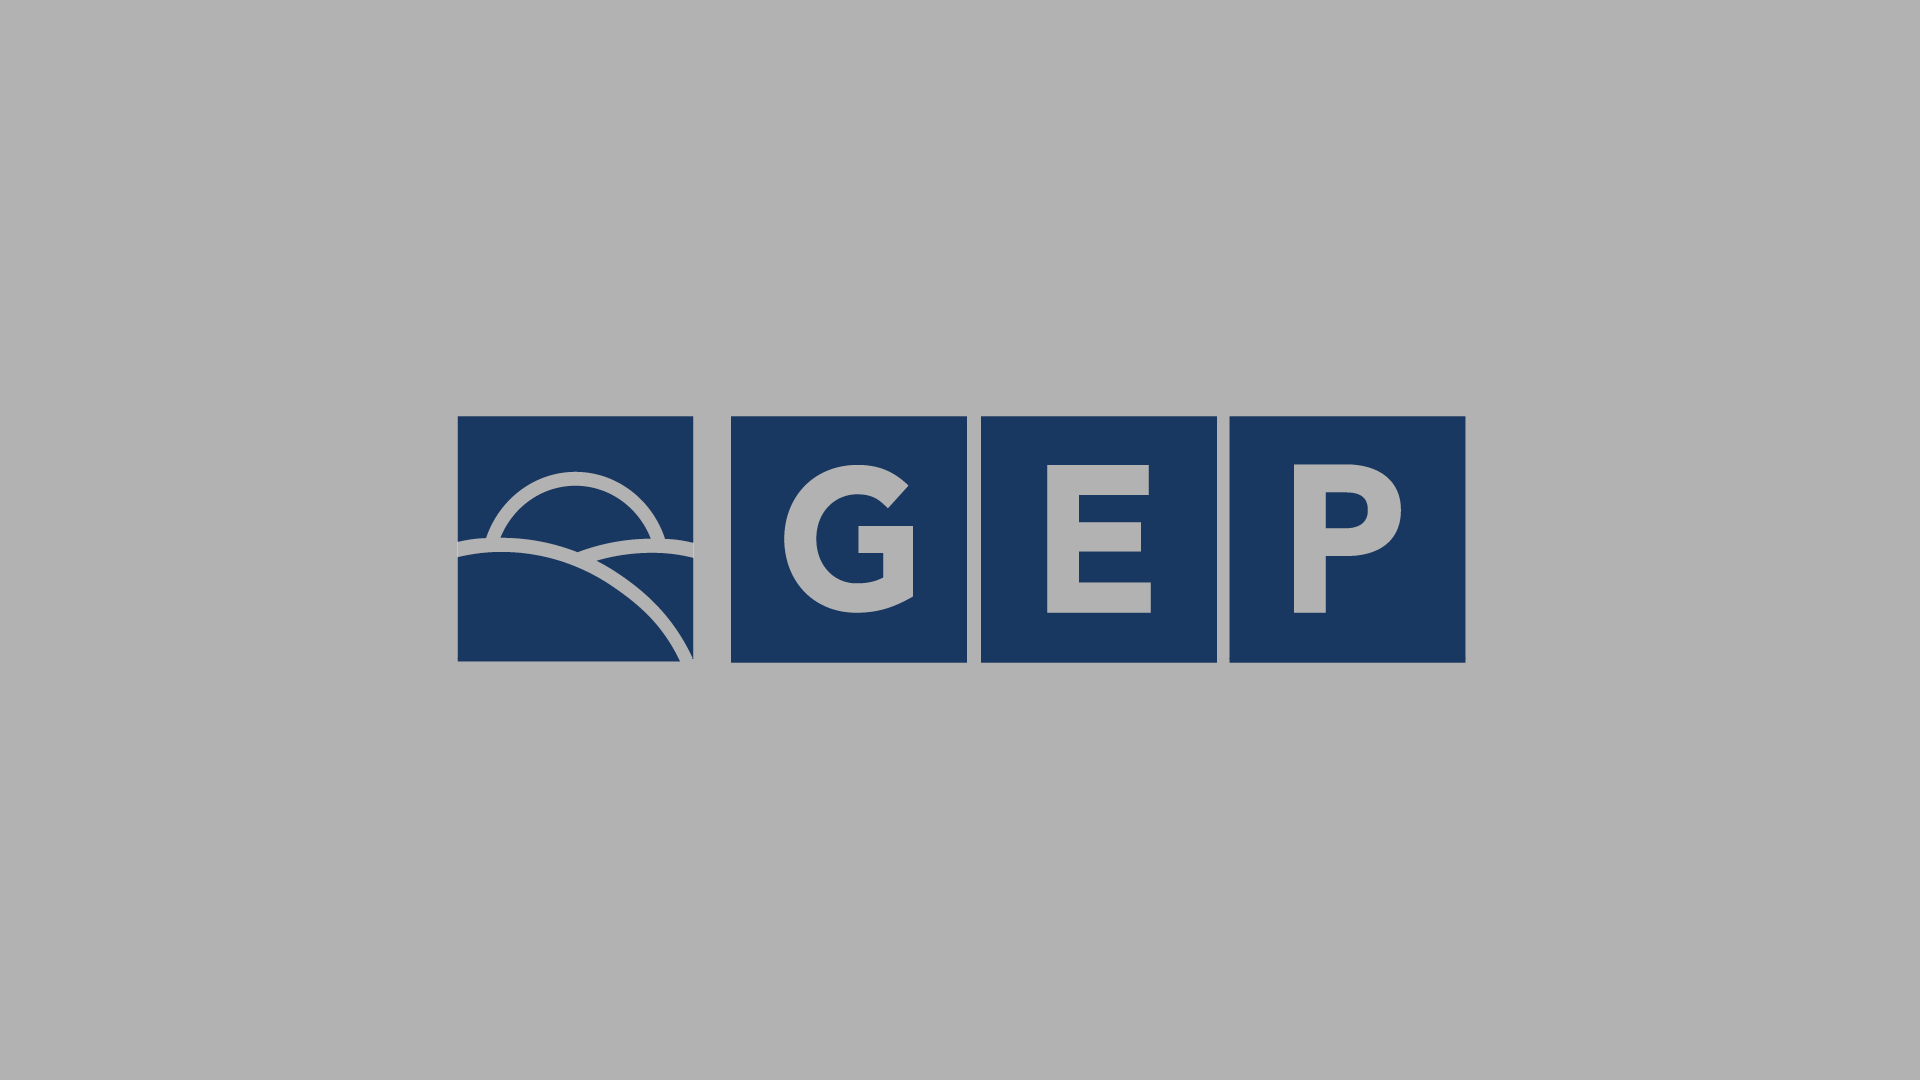 gep logotype redesign 2022